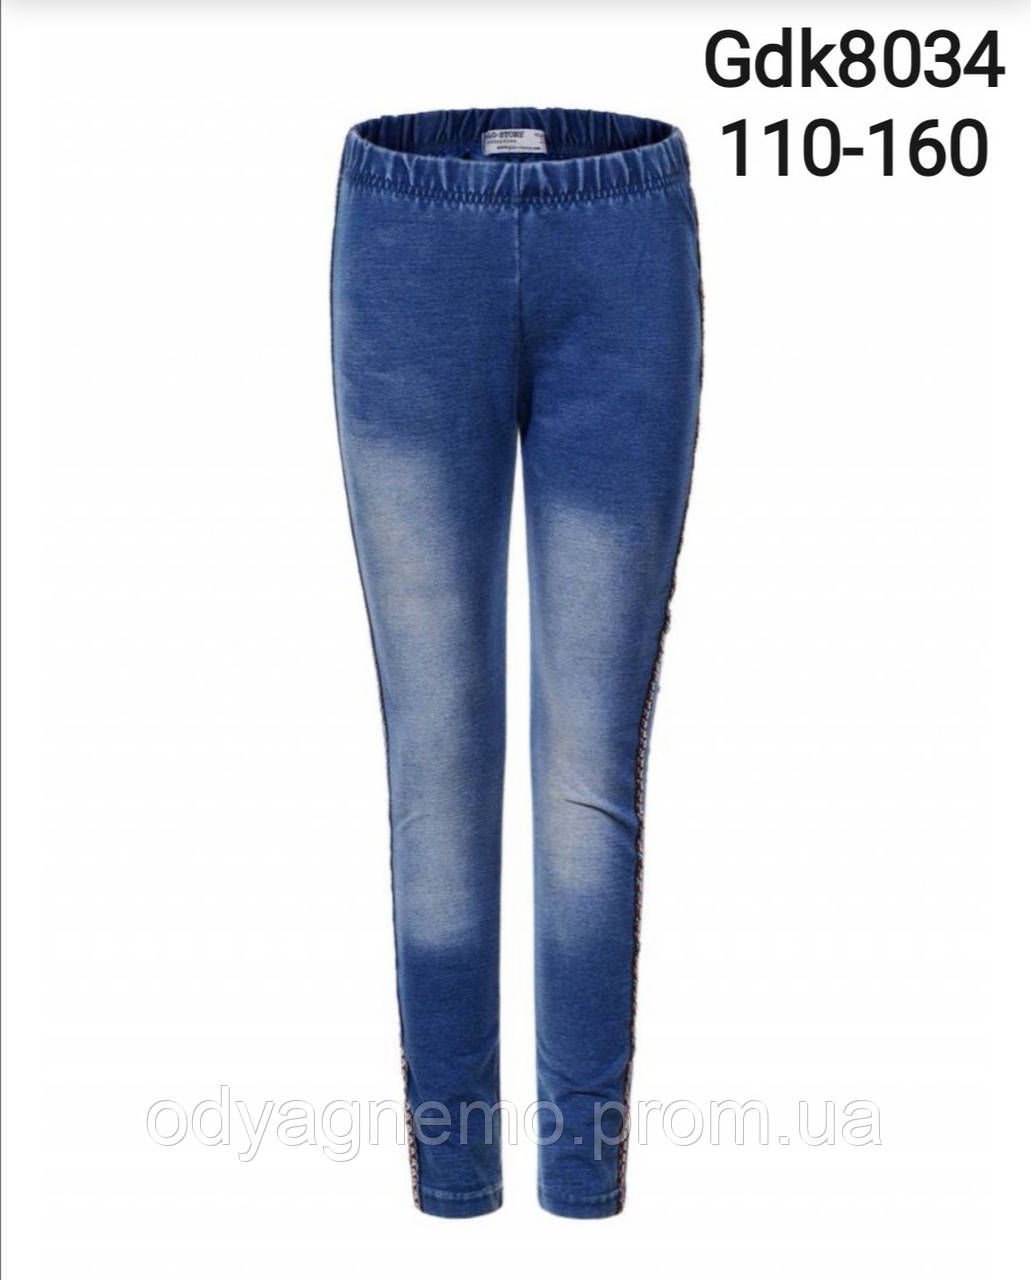 Лосини c імітацією джинси для дівчаток оптом, 110-160 pp. Артикул: GDK8034